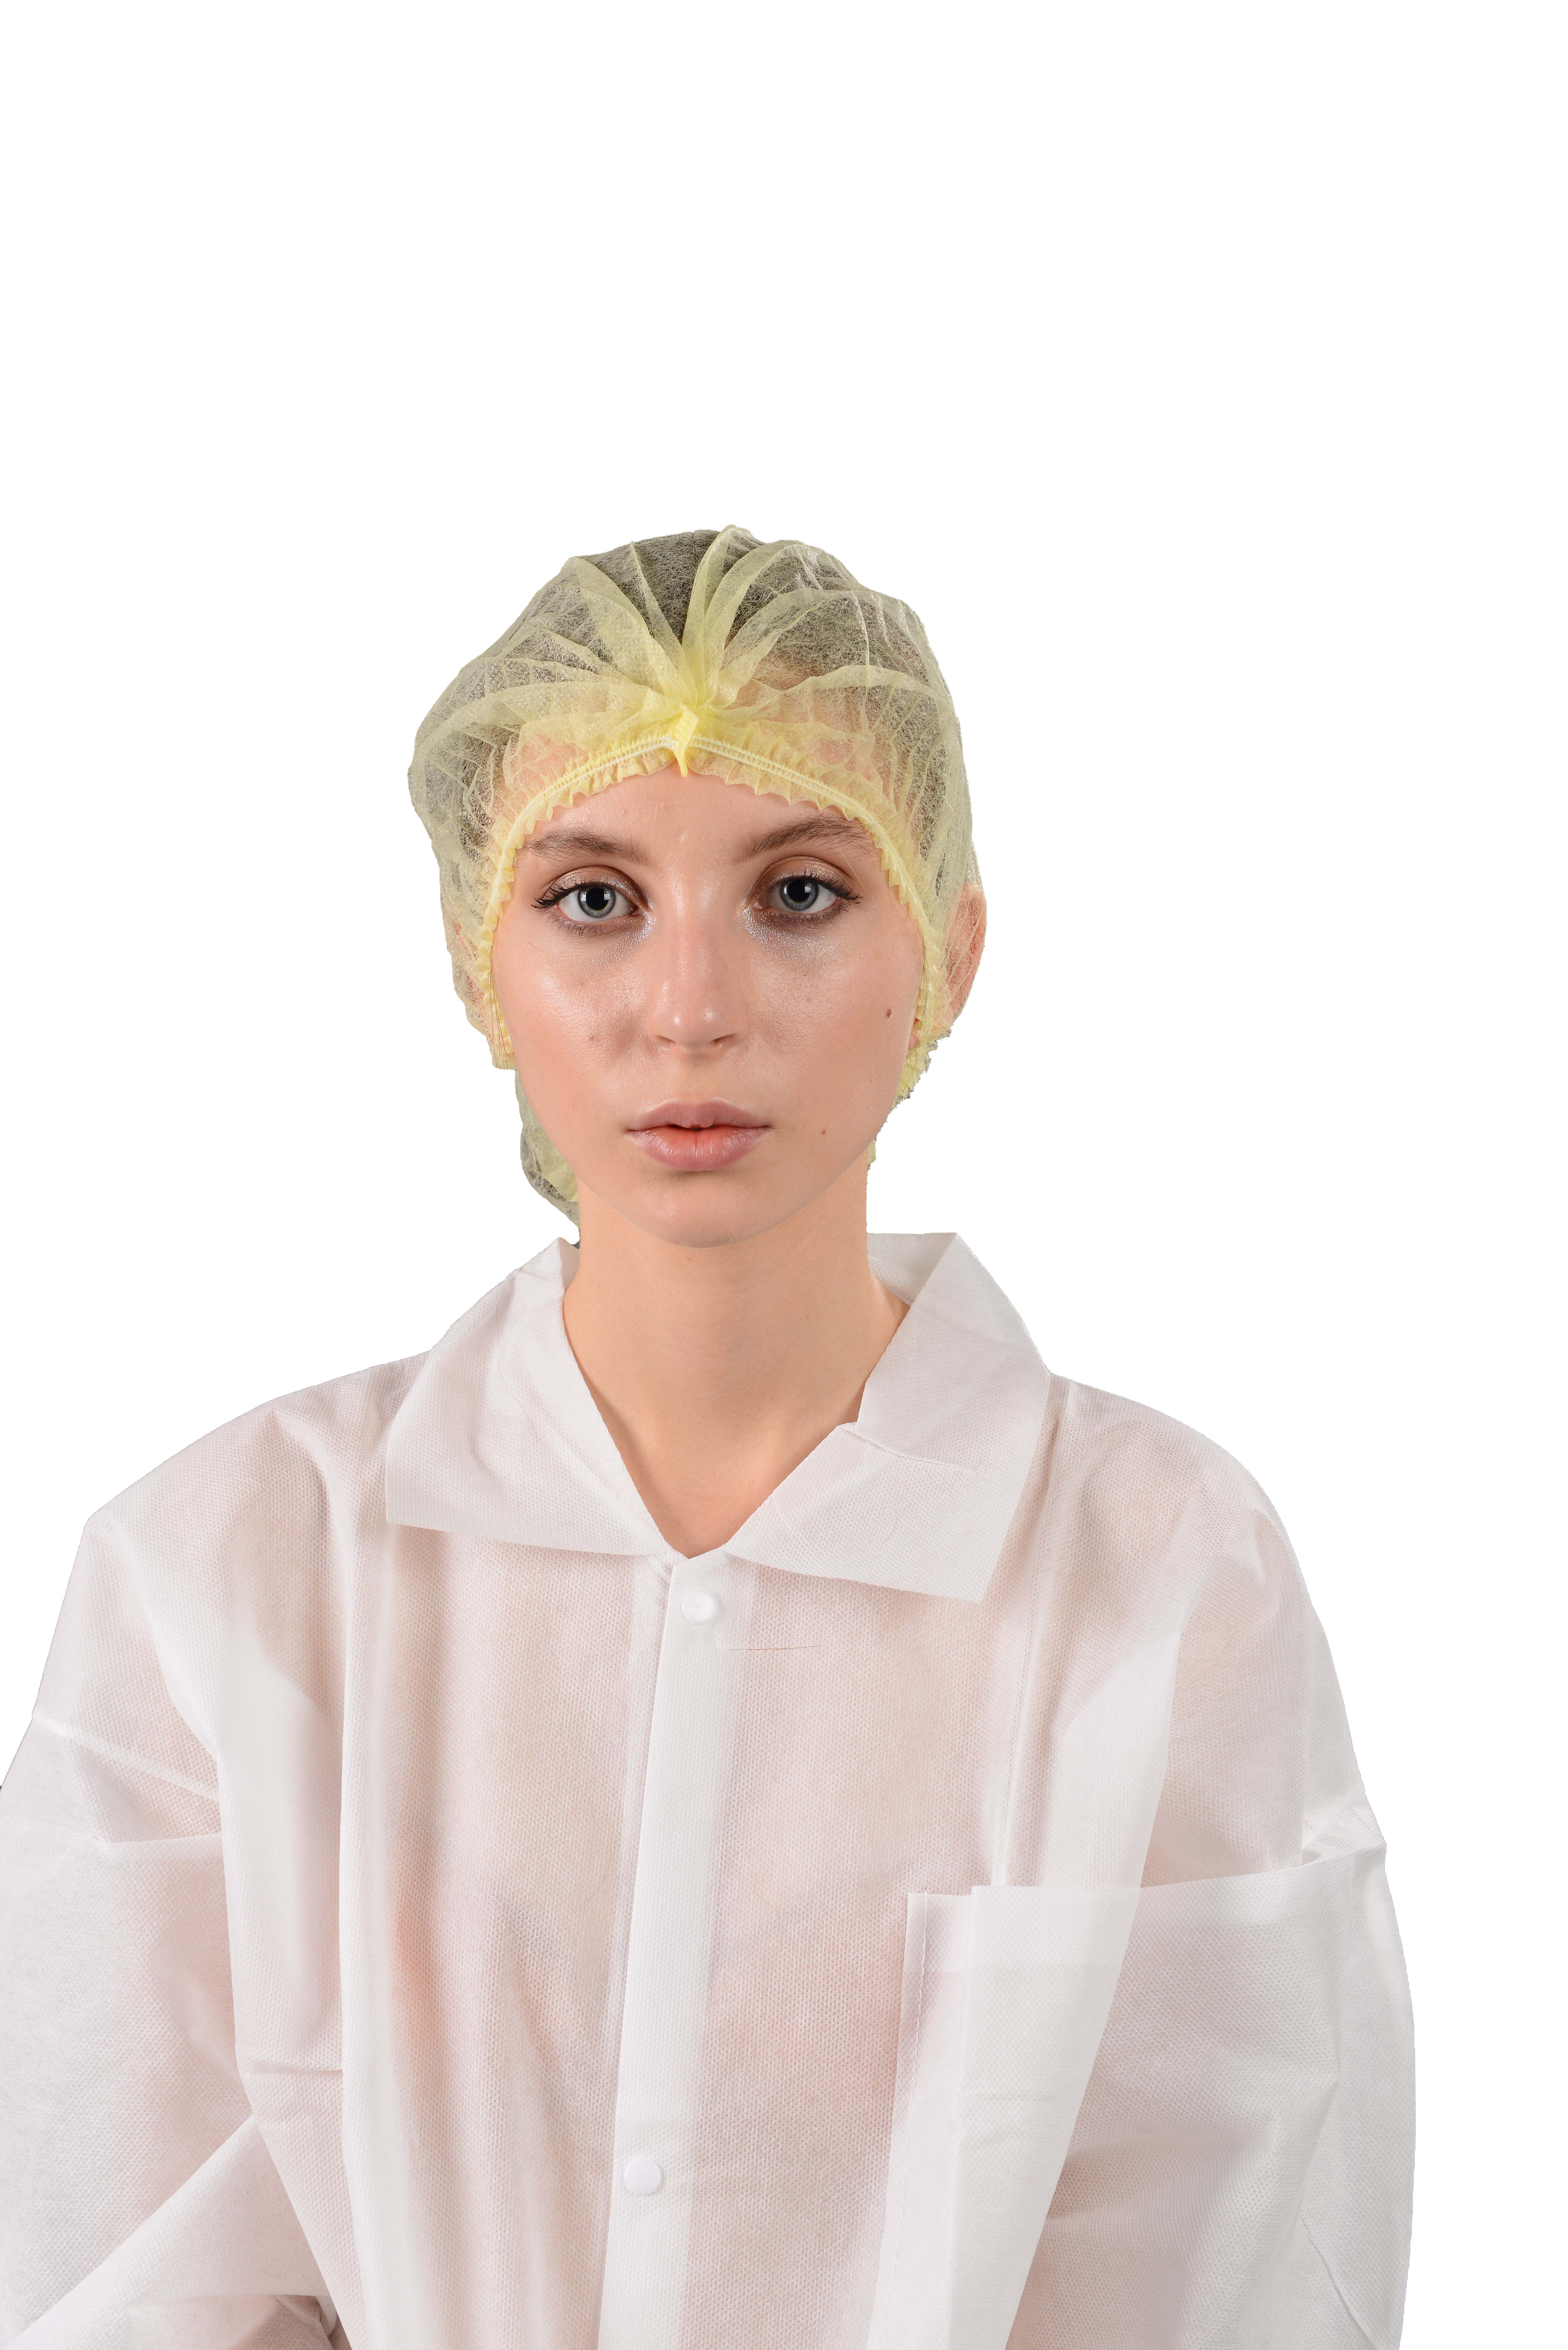 Disposable Nonwoven Nurse Cap Mob Cap Clip Cap Hair Net